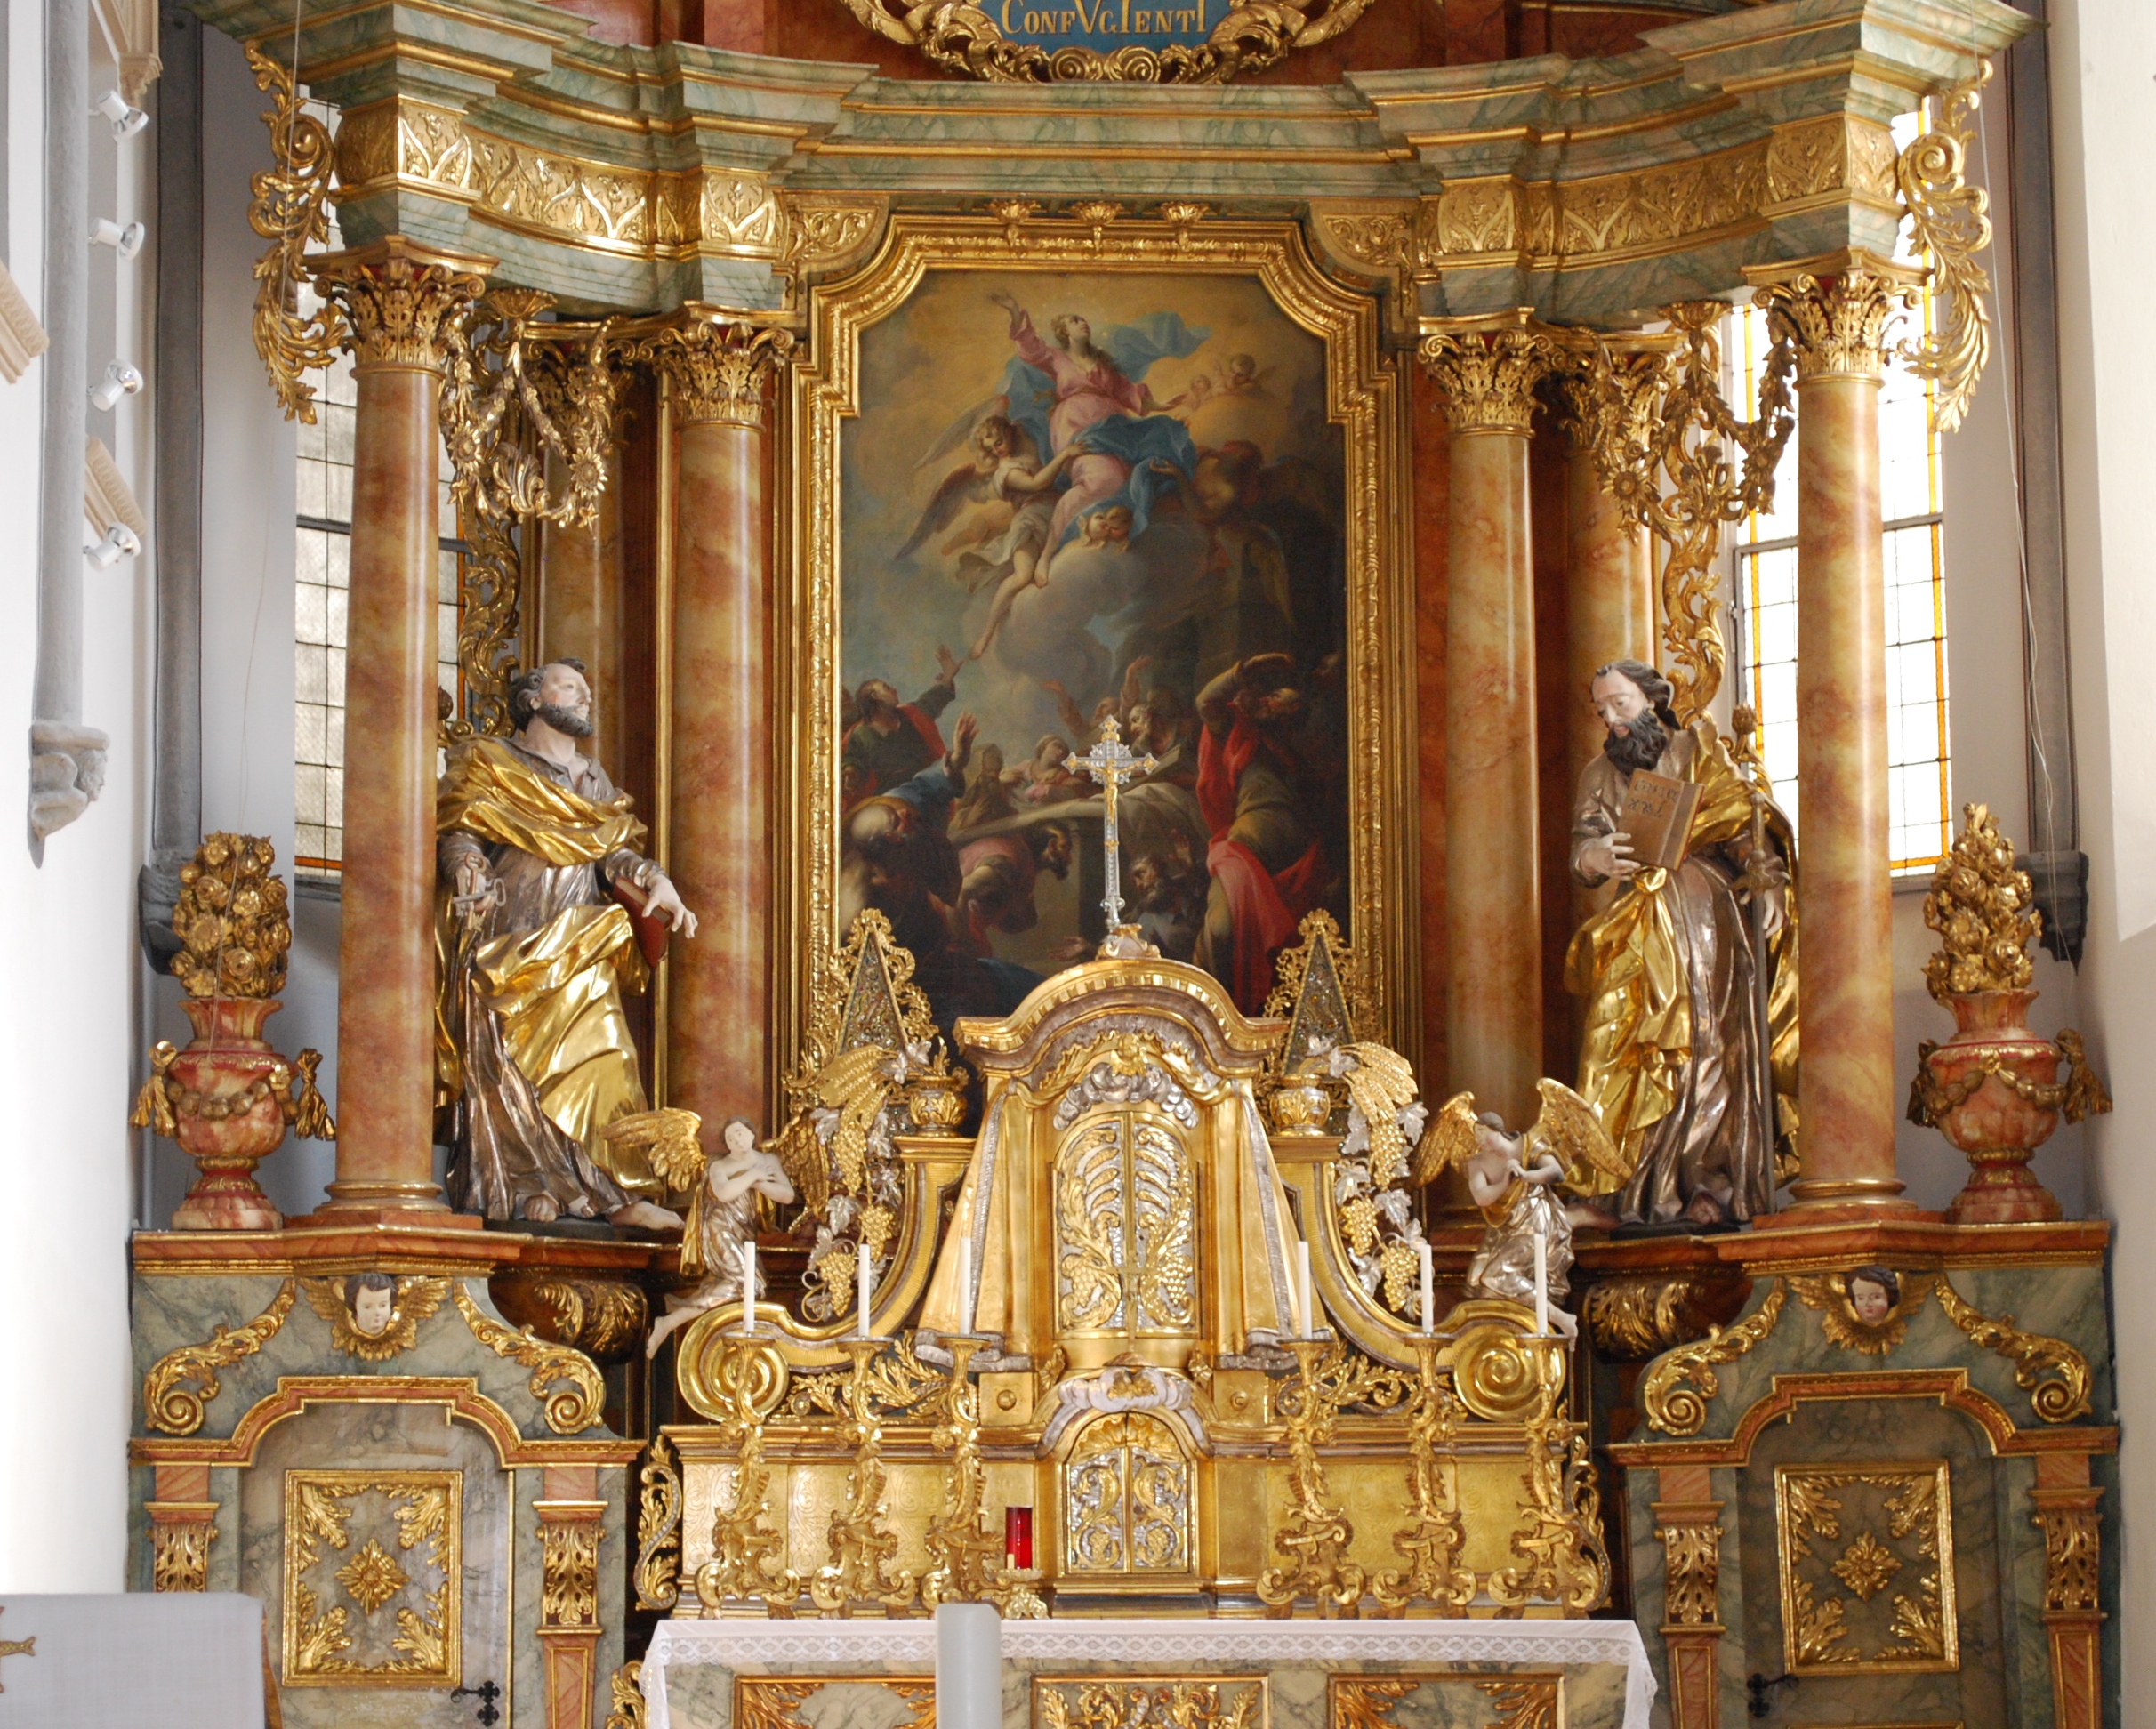 Der Altar in der Stadtpfarrkirche Gmünd. Wir freuen uns auf ein wunderbares Adventkonzert in der Stadtpfarrkirche.